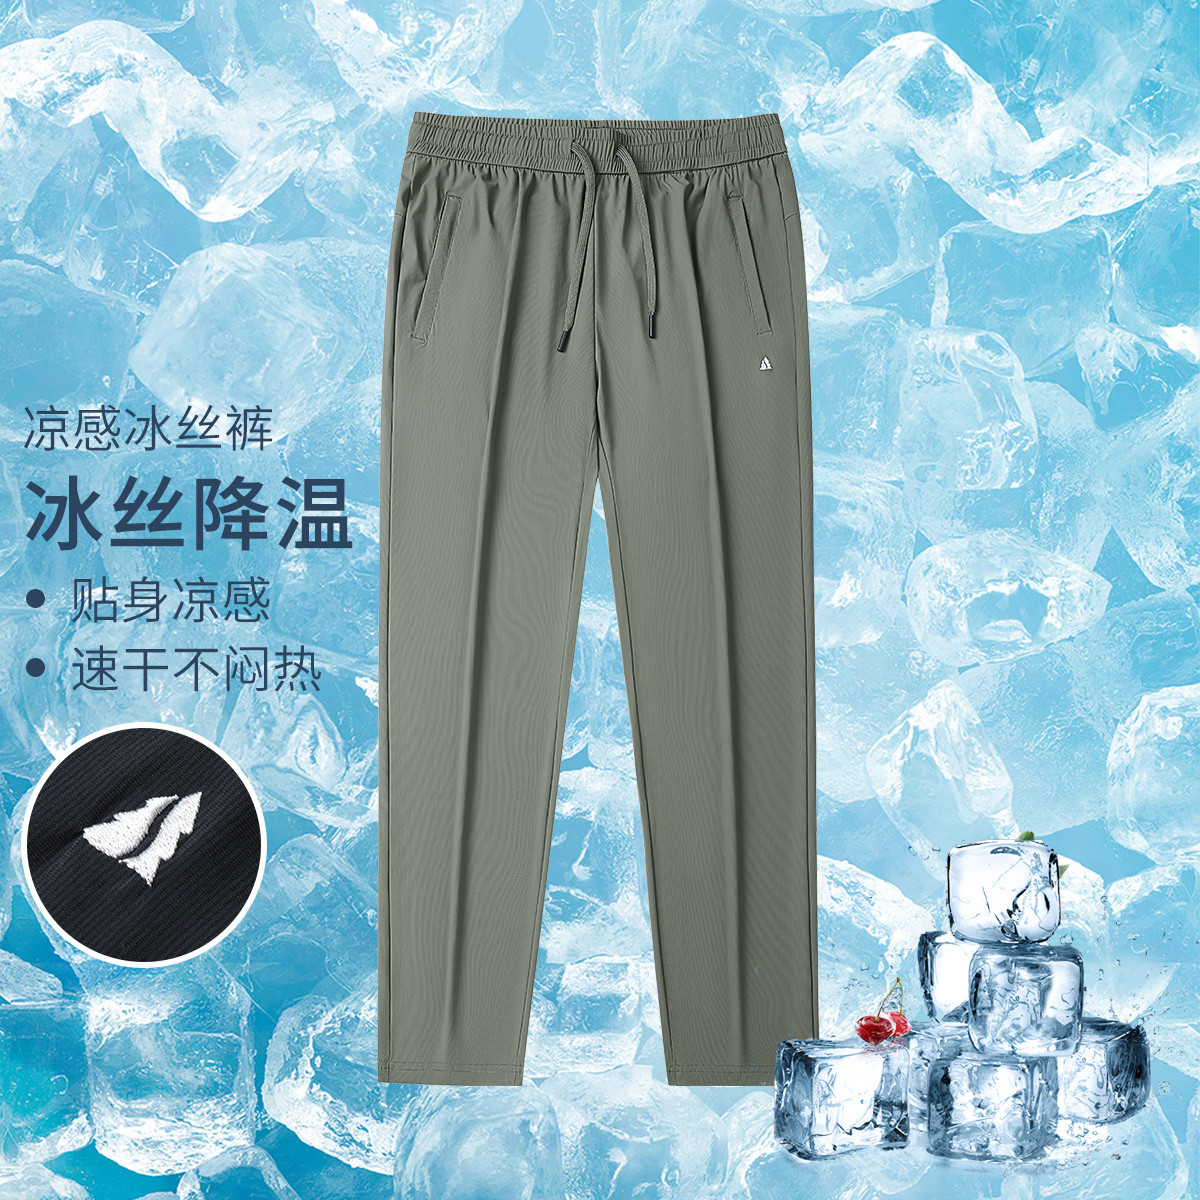 【轻薄冰感】夏季新款轻薄弹力冰丝直筒裤舒适透气男士休闲裤